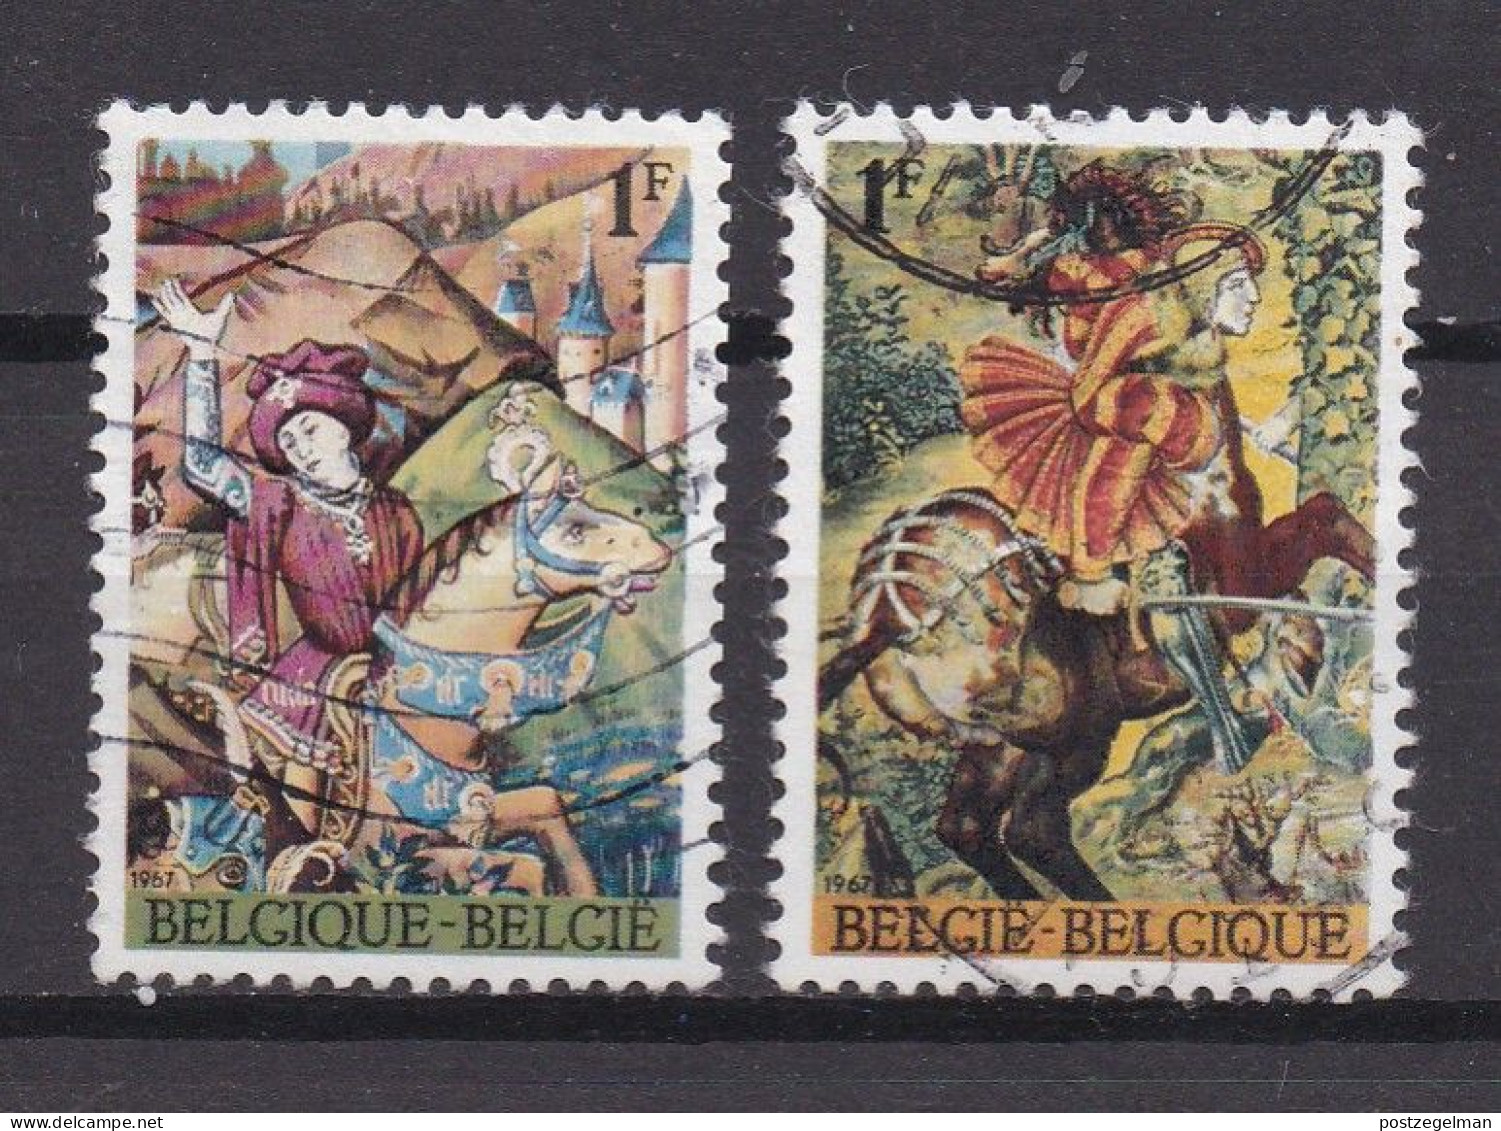 BELGIUM,1967, Used Stamp(s), Lodewyk De Raet , M1482-1483 , Scan 10445, - Usados